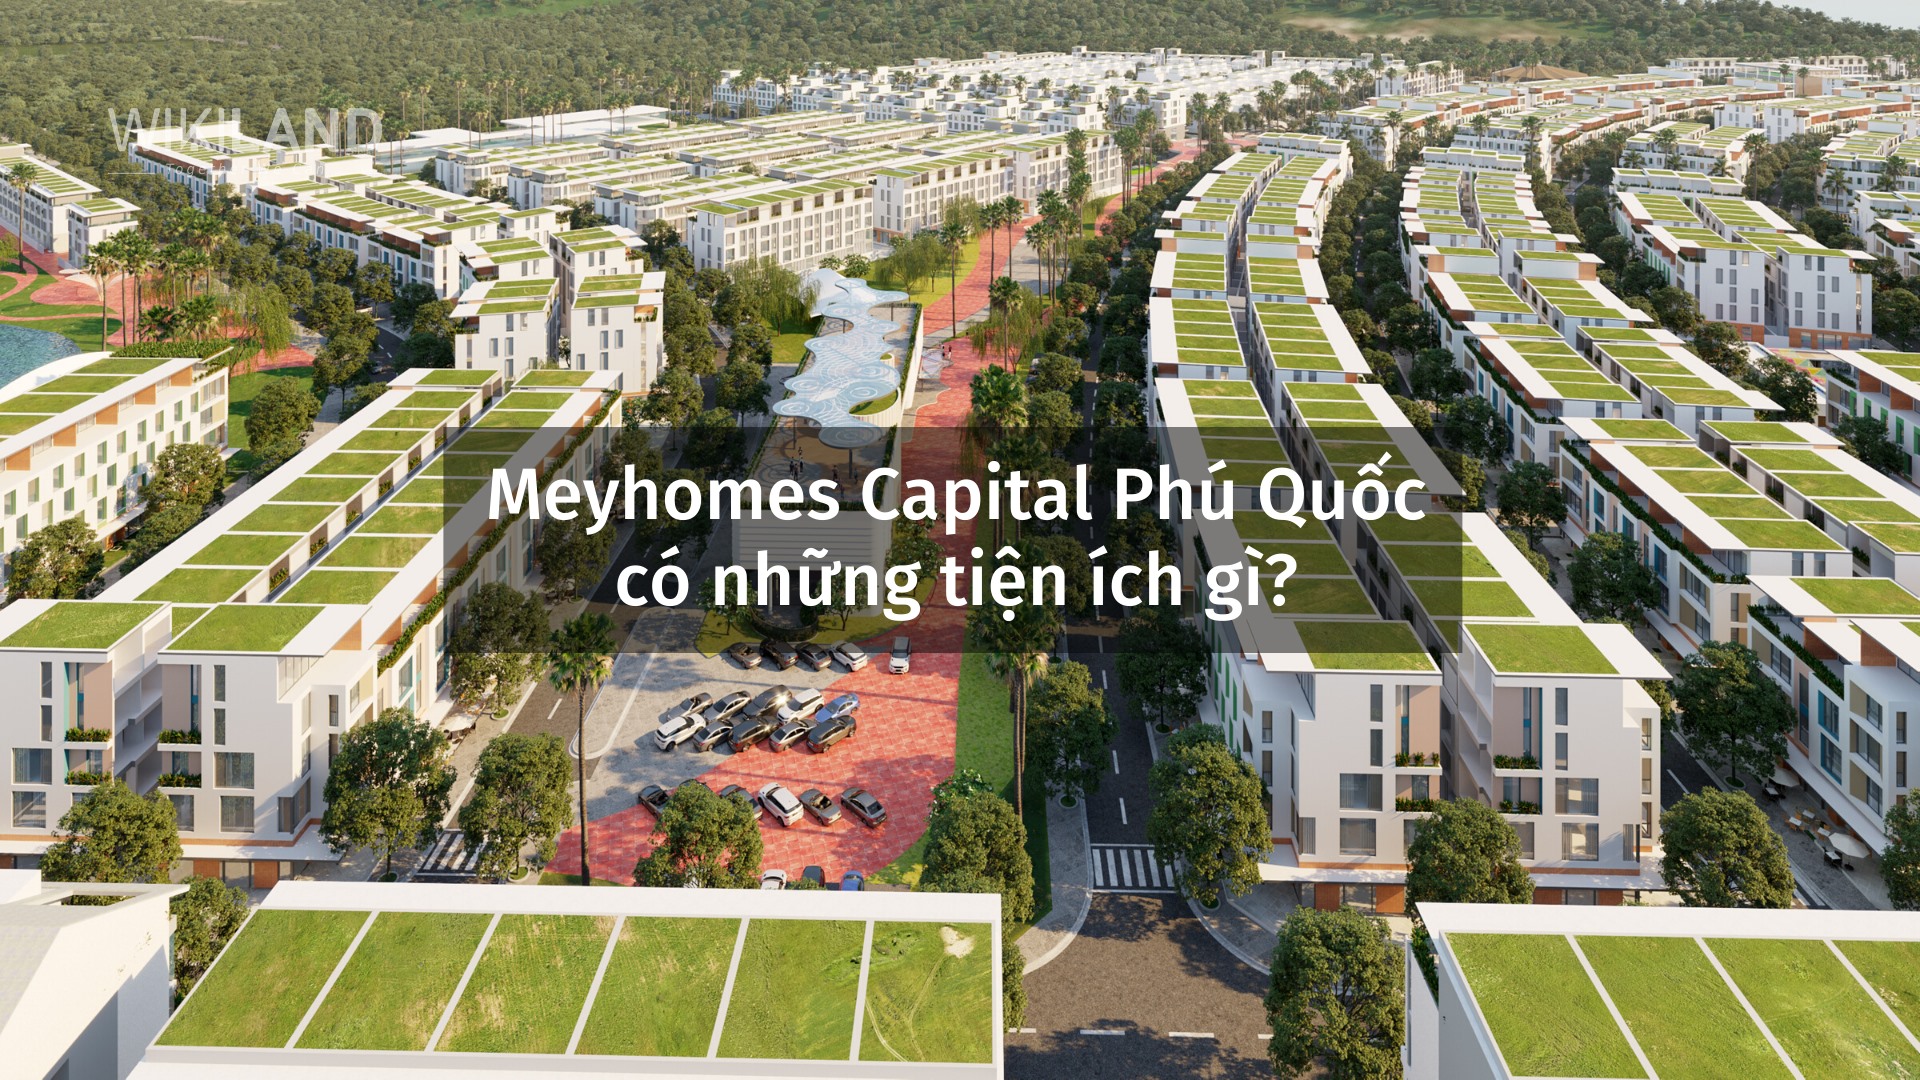 Giỏ hàng và giá bán dự án Meyhomes Capital Phú Quốc